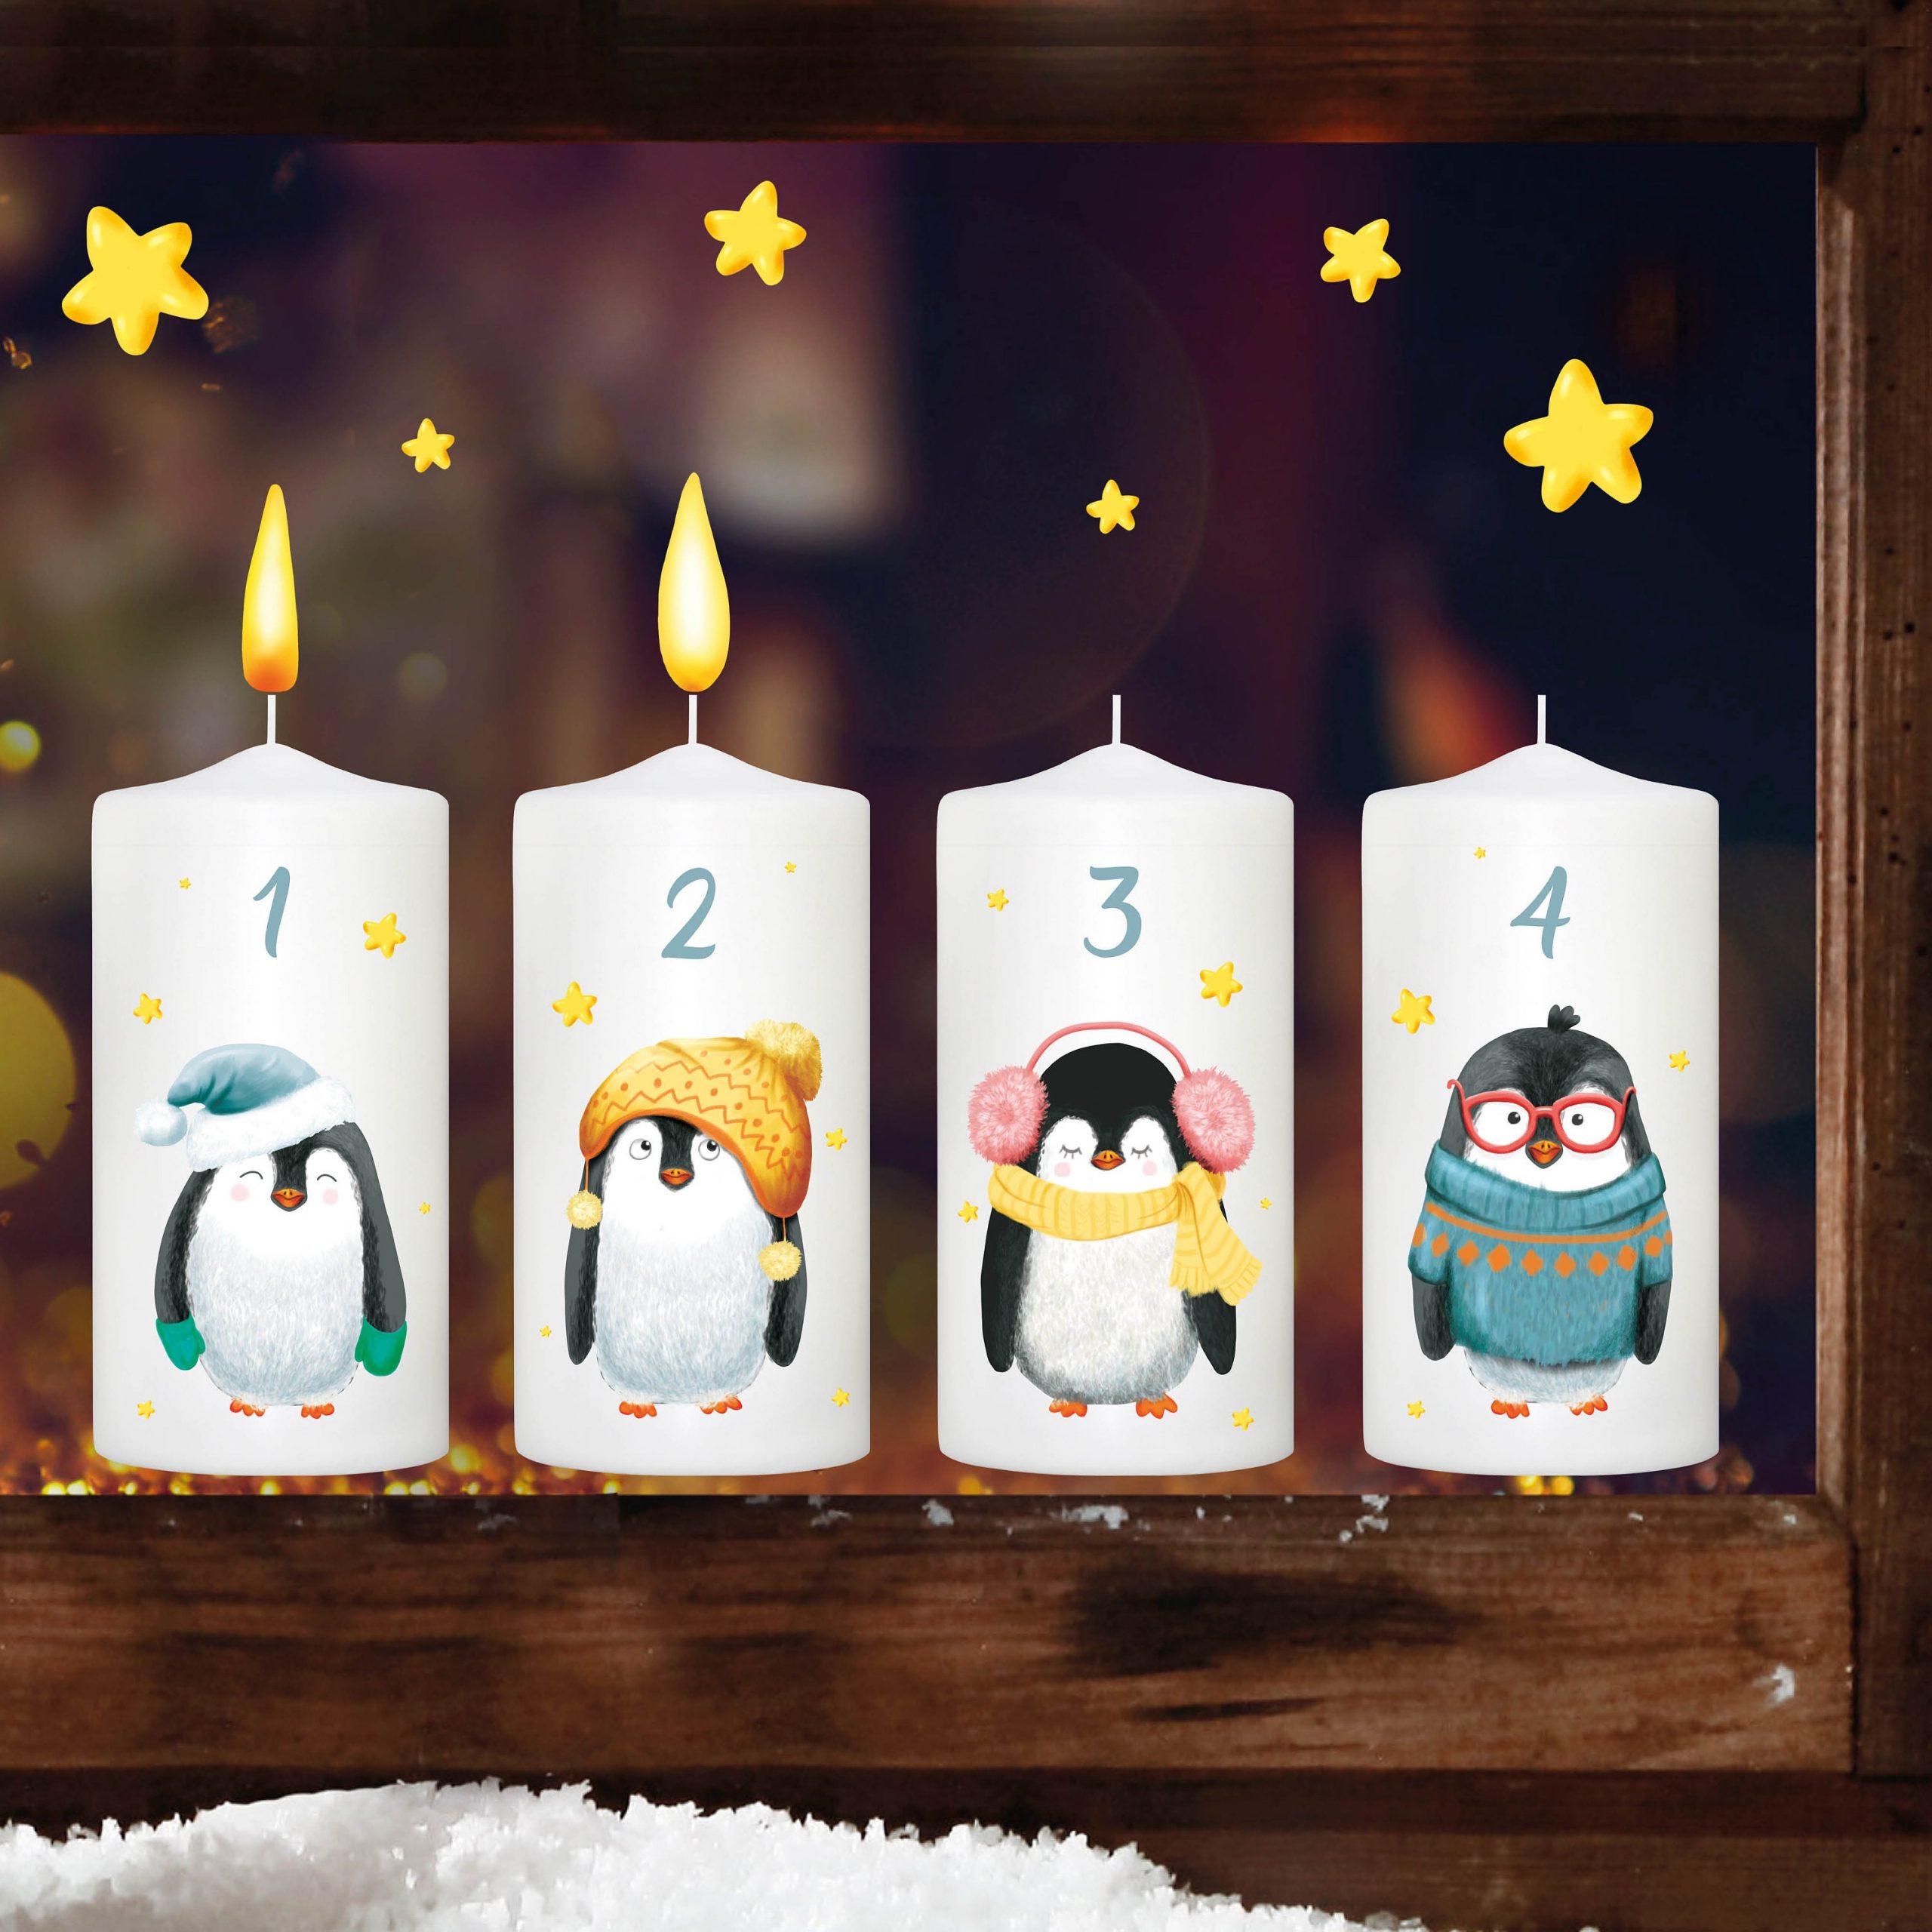 Fensterbild Weihnachten Winter Adventskerzen mit Pinguinen und Flammen zum Selbstaufkleben an jedem Advent Fensteraufkleber Fensterdeko